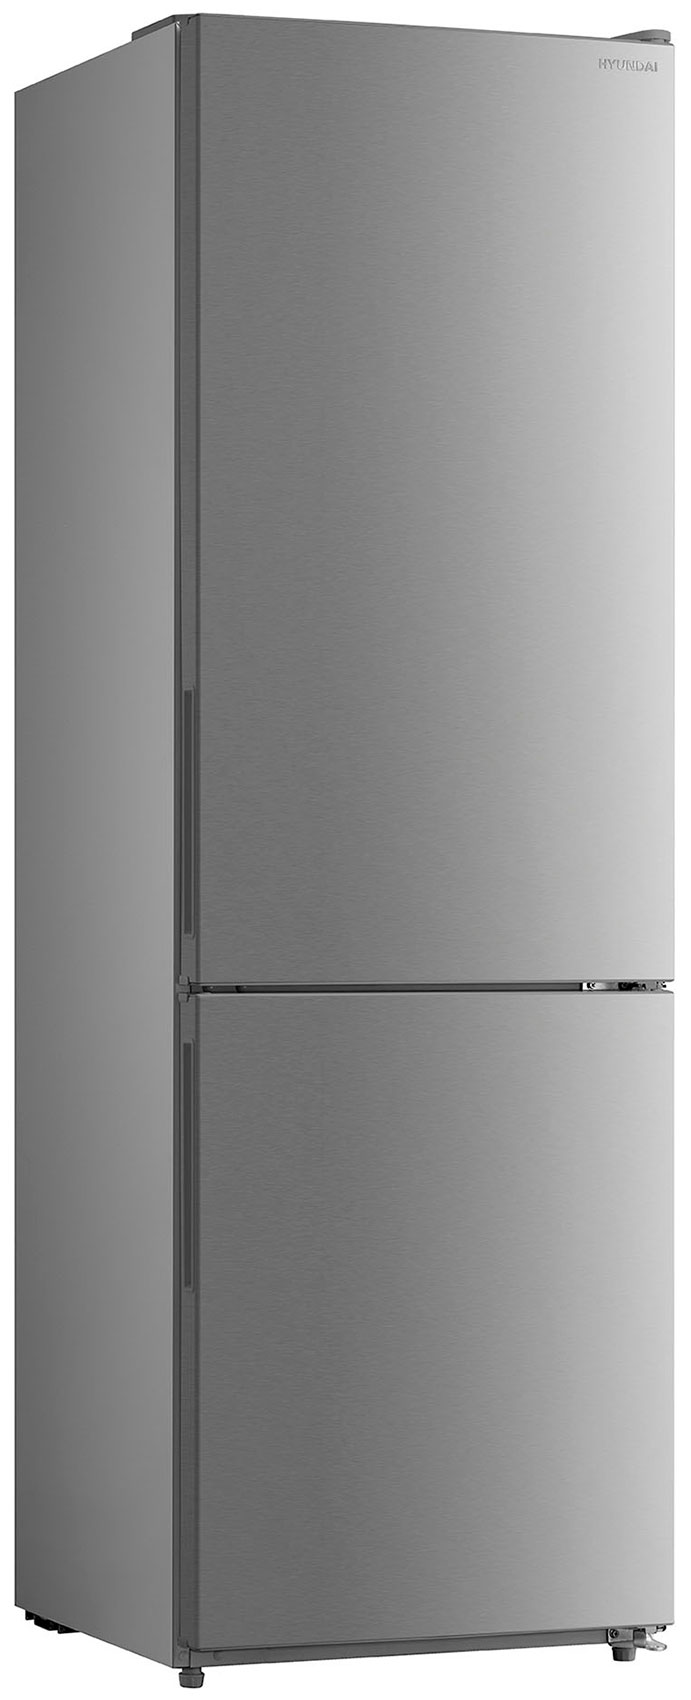 Двухкамерный холодильник Hyundai CC3093FIX нержавеющая сталь двухкамерный холодильник hyundai cc3595fix нержавеющая сталь